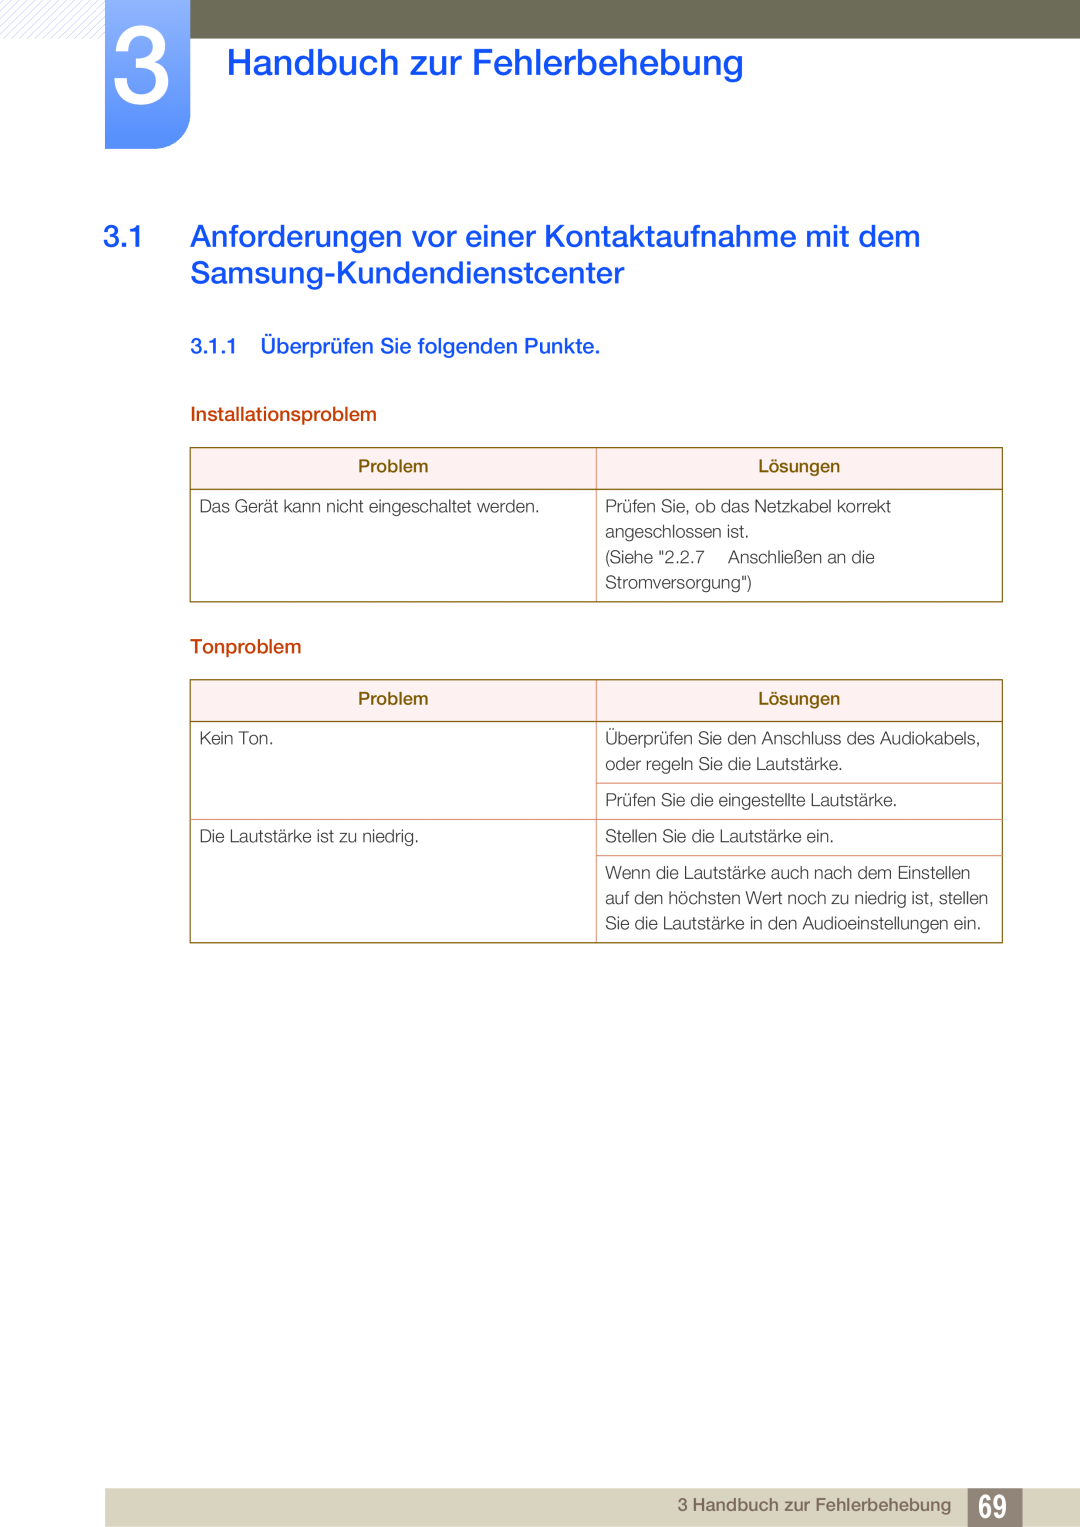 Samsung LF00FNXPFBZXEN Handbuch zur Fehlerbehebung, 3.1.1 Überprüfen Sie folgenden Punkte, Installationsproblem, Problem 